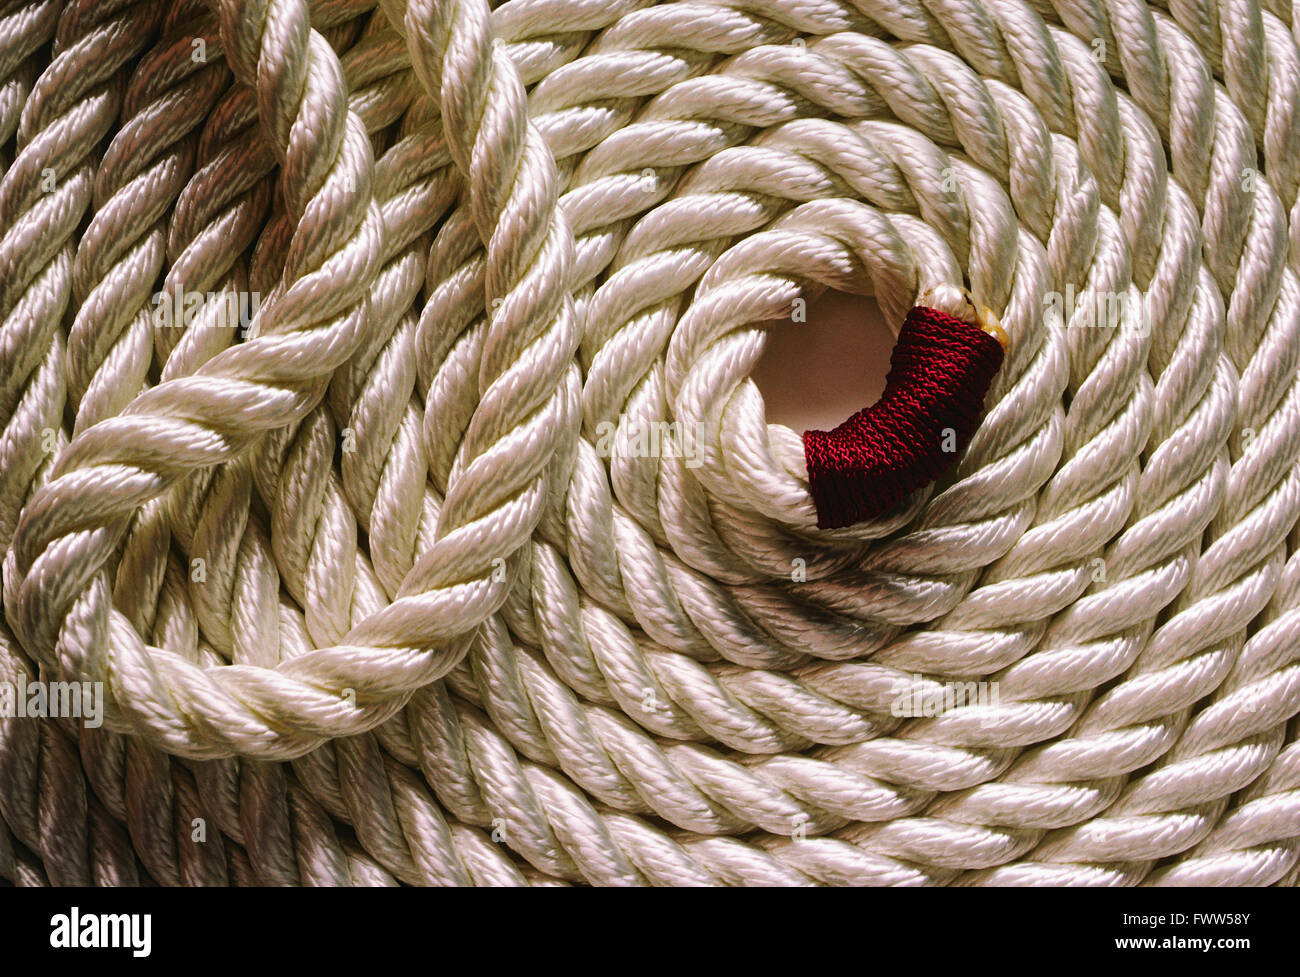 Heavy coiled white marina rope Stock Photo